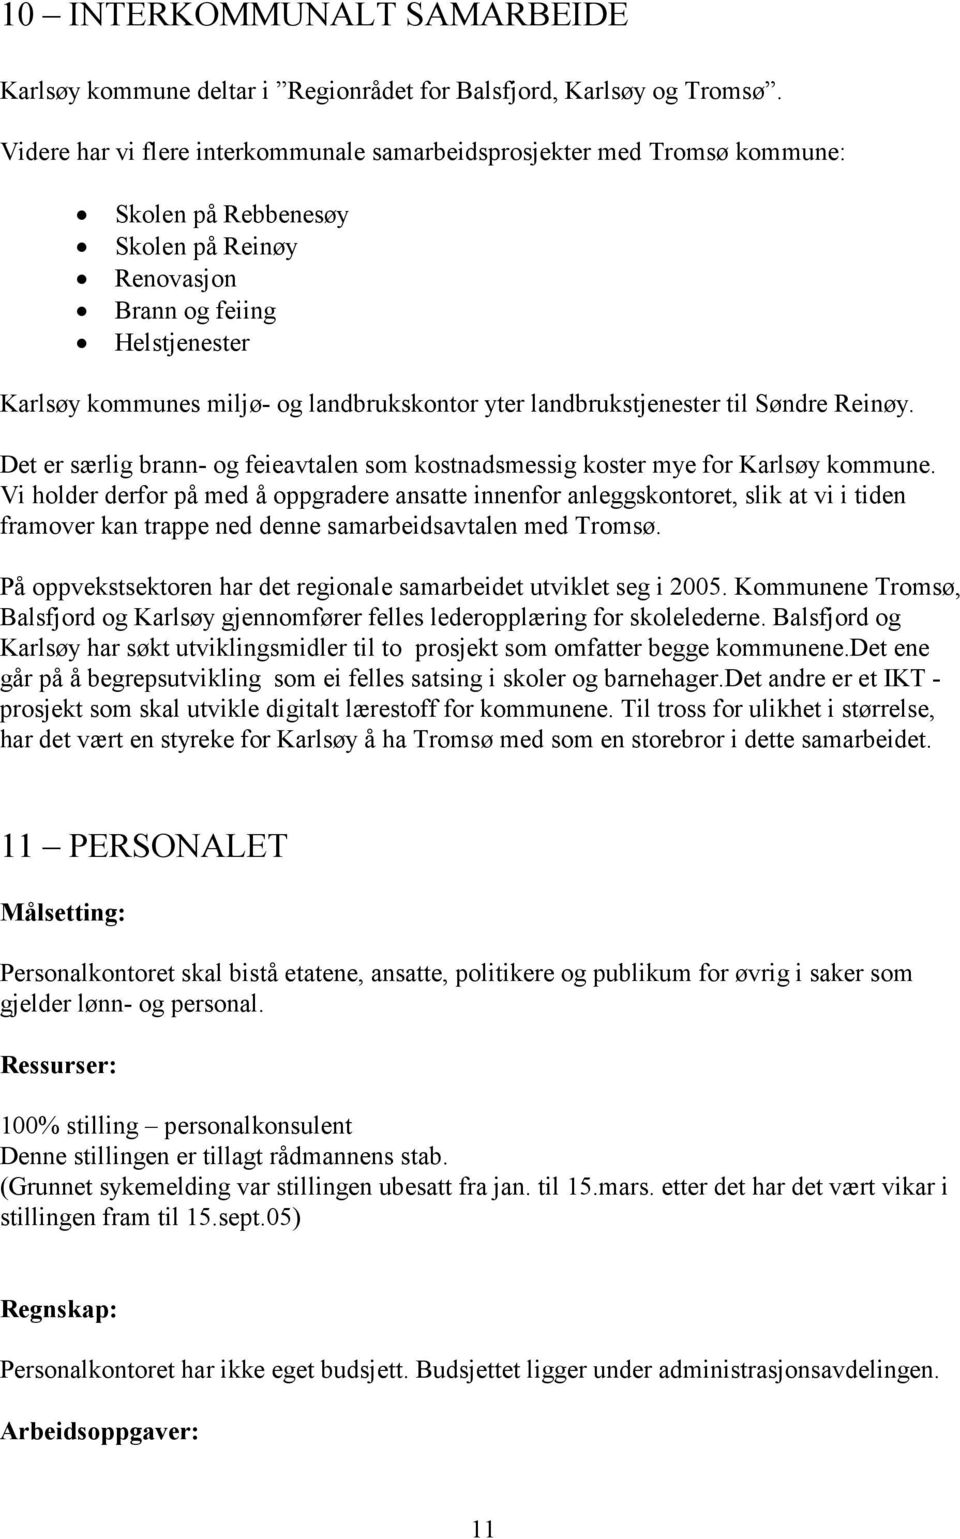 yter landbrukstjenester til Søndre Reinøy. Det er særlig brann- og feieavtalen som kostnadsmessig koster mye for Karlsøy kommune.